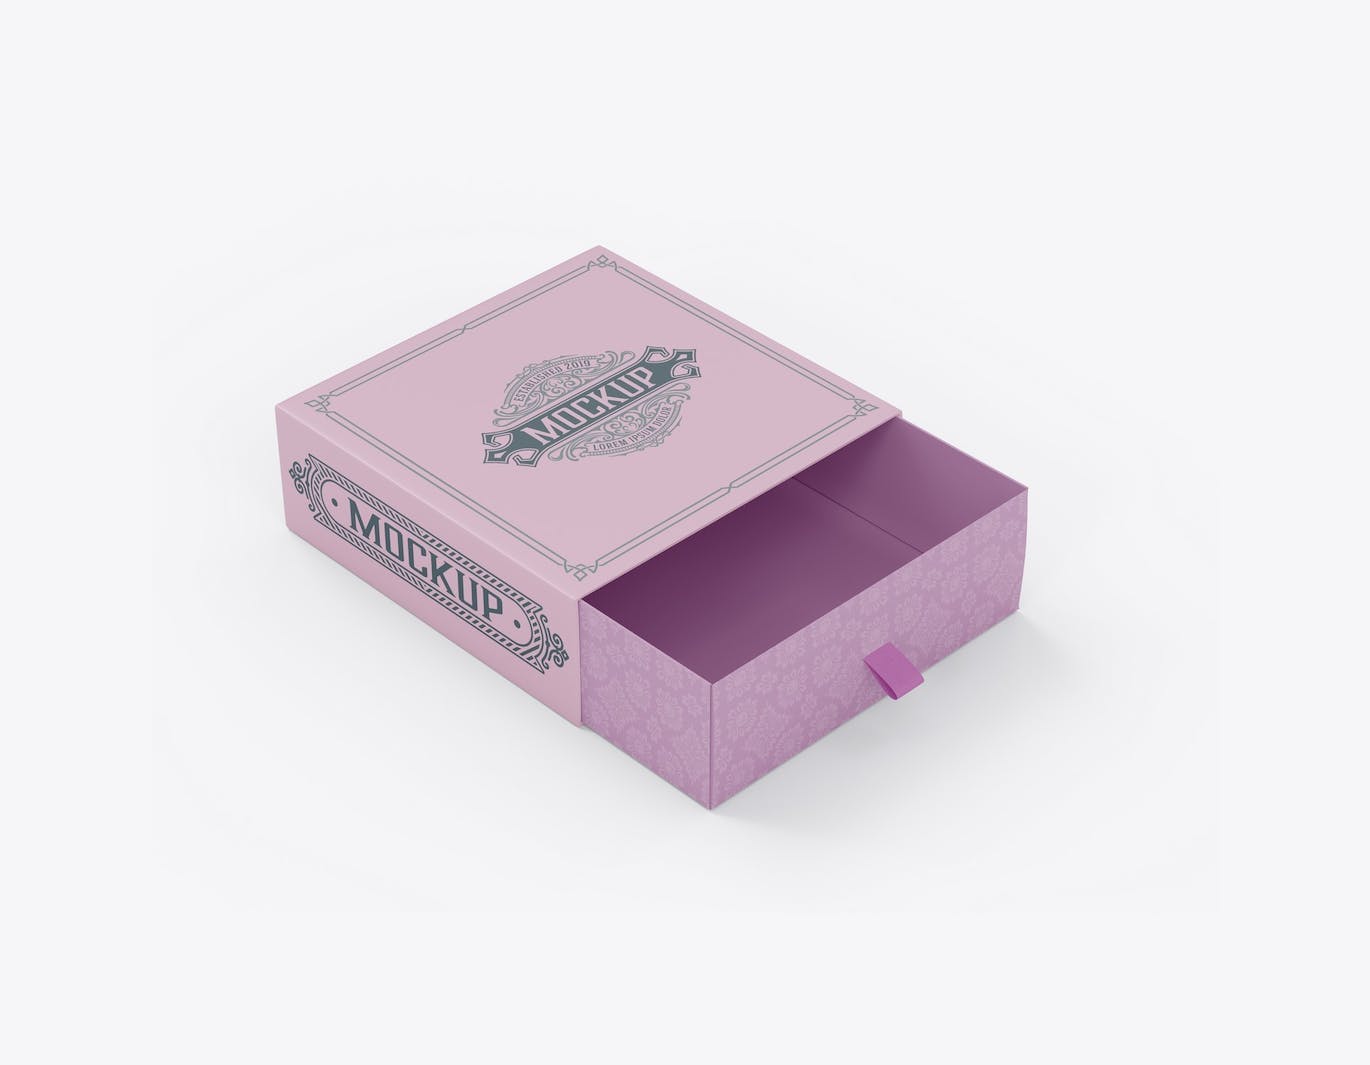 拖式纸盒包装设计样机 SlideBox Mockup 样机素材 第10张